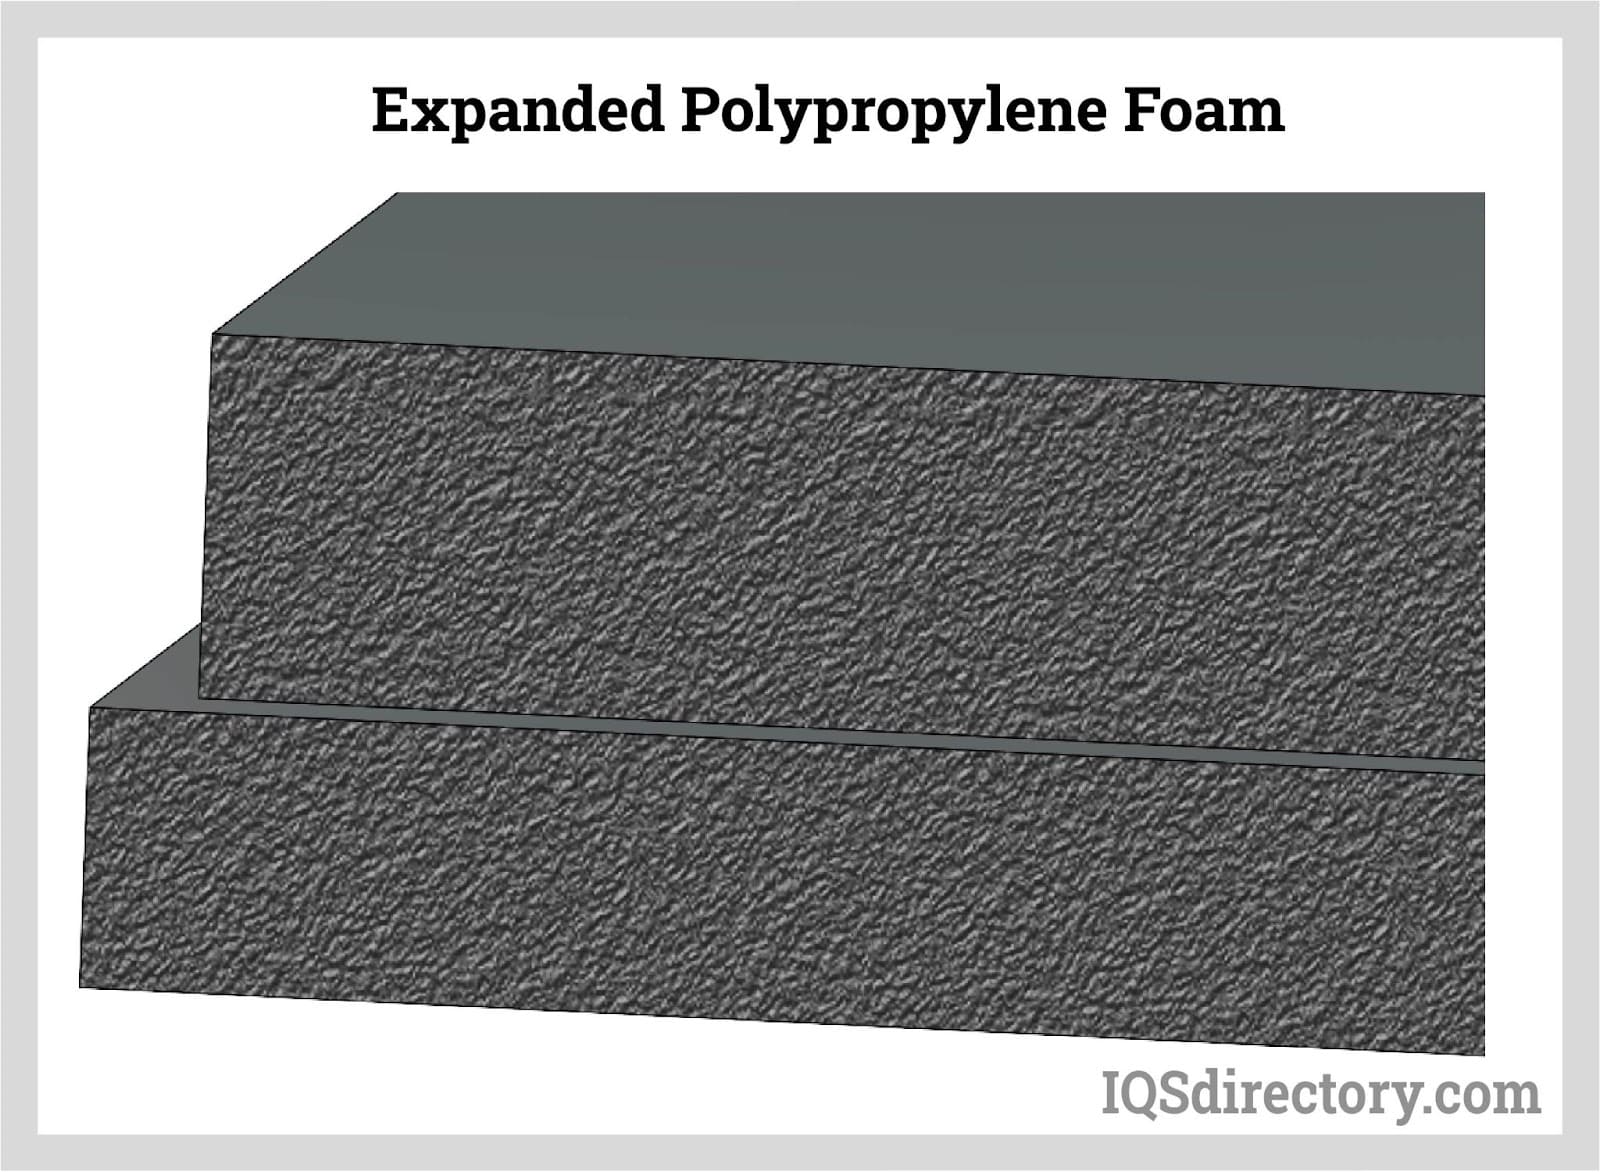 Expanded Polypropylene Foam